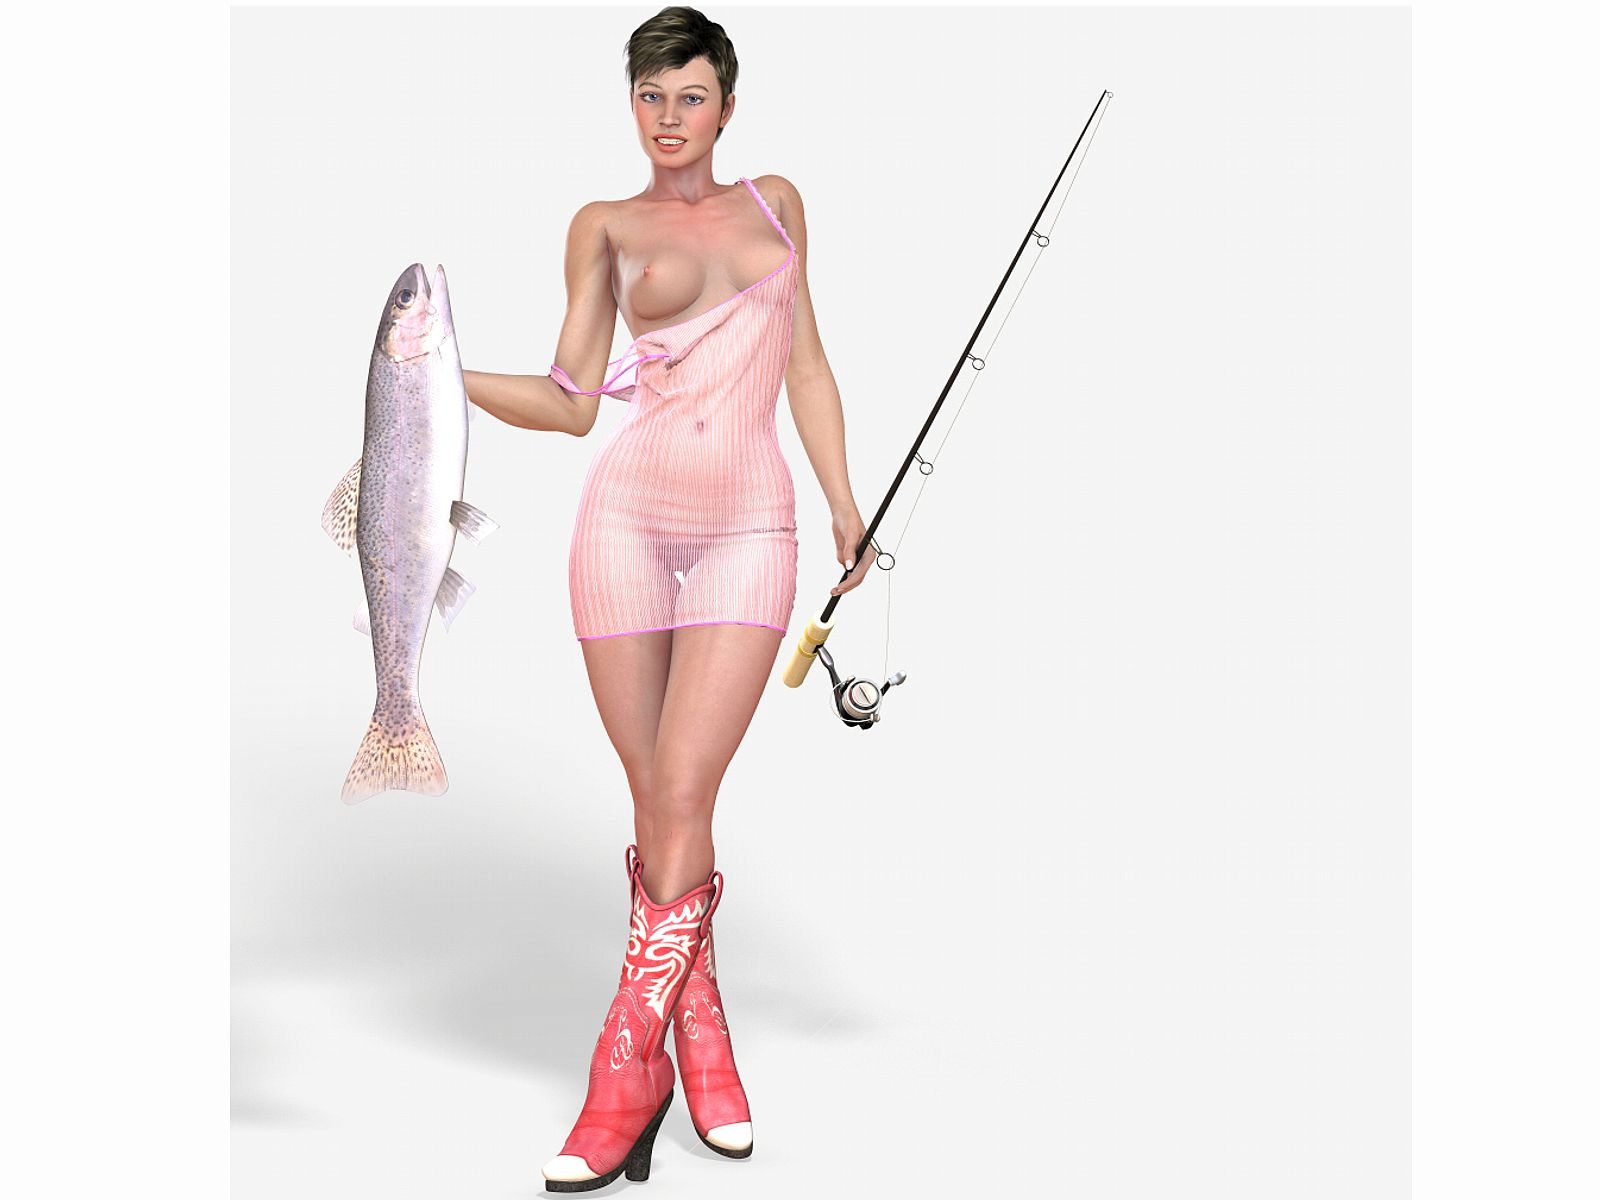 нарисованная девушка, рыбачка в прозрачной ночной рубашке.  крутые картинки для рабочего стола